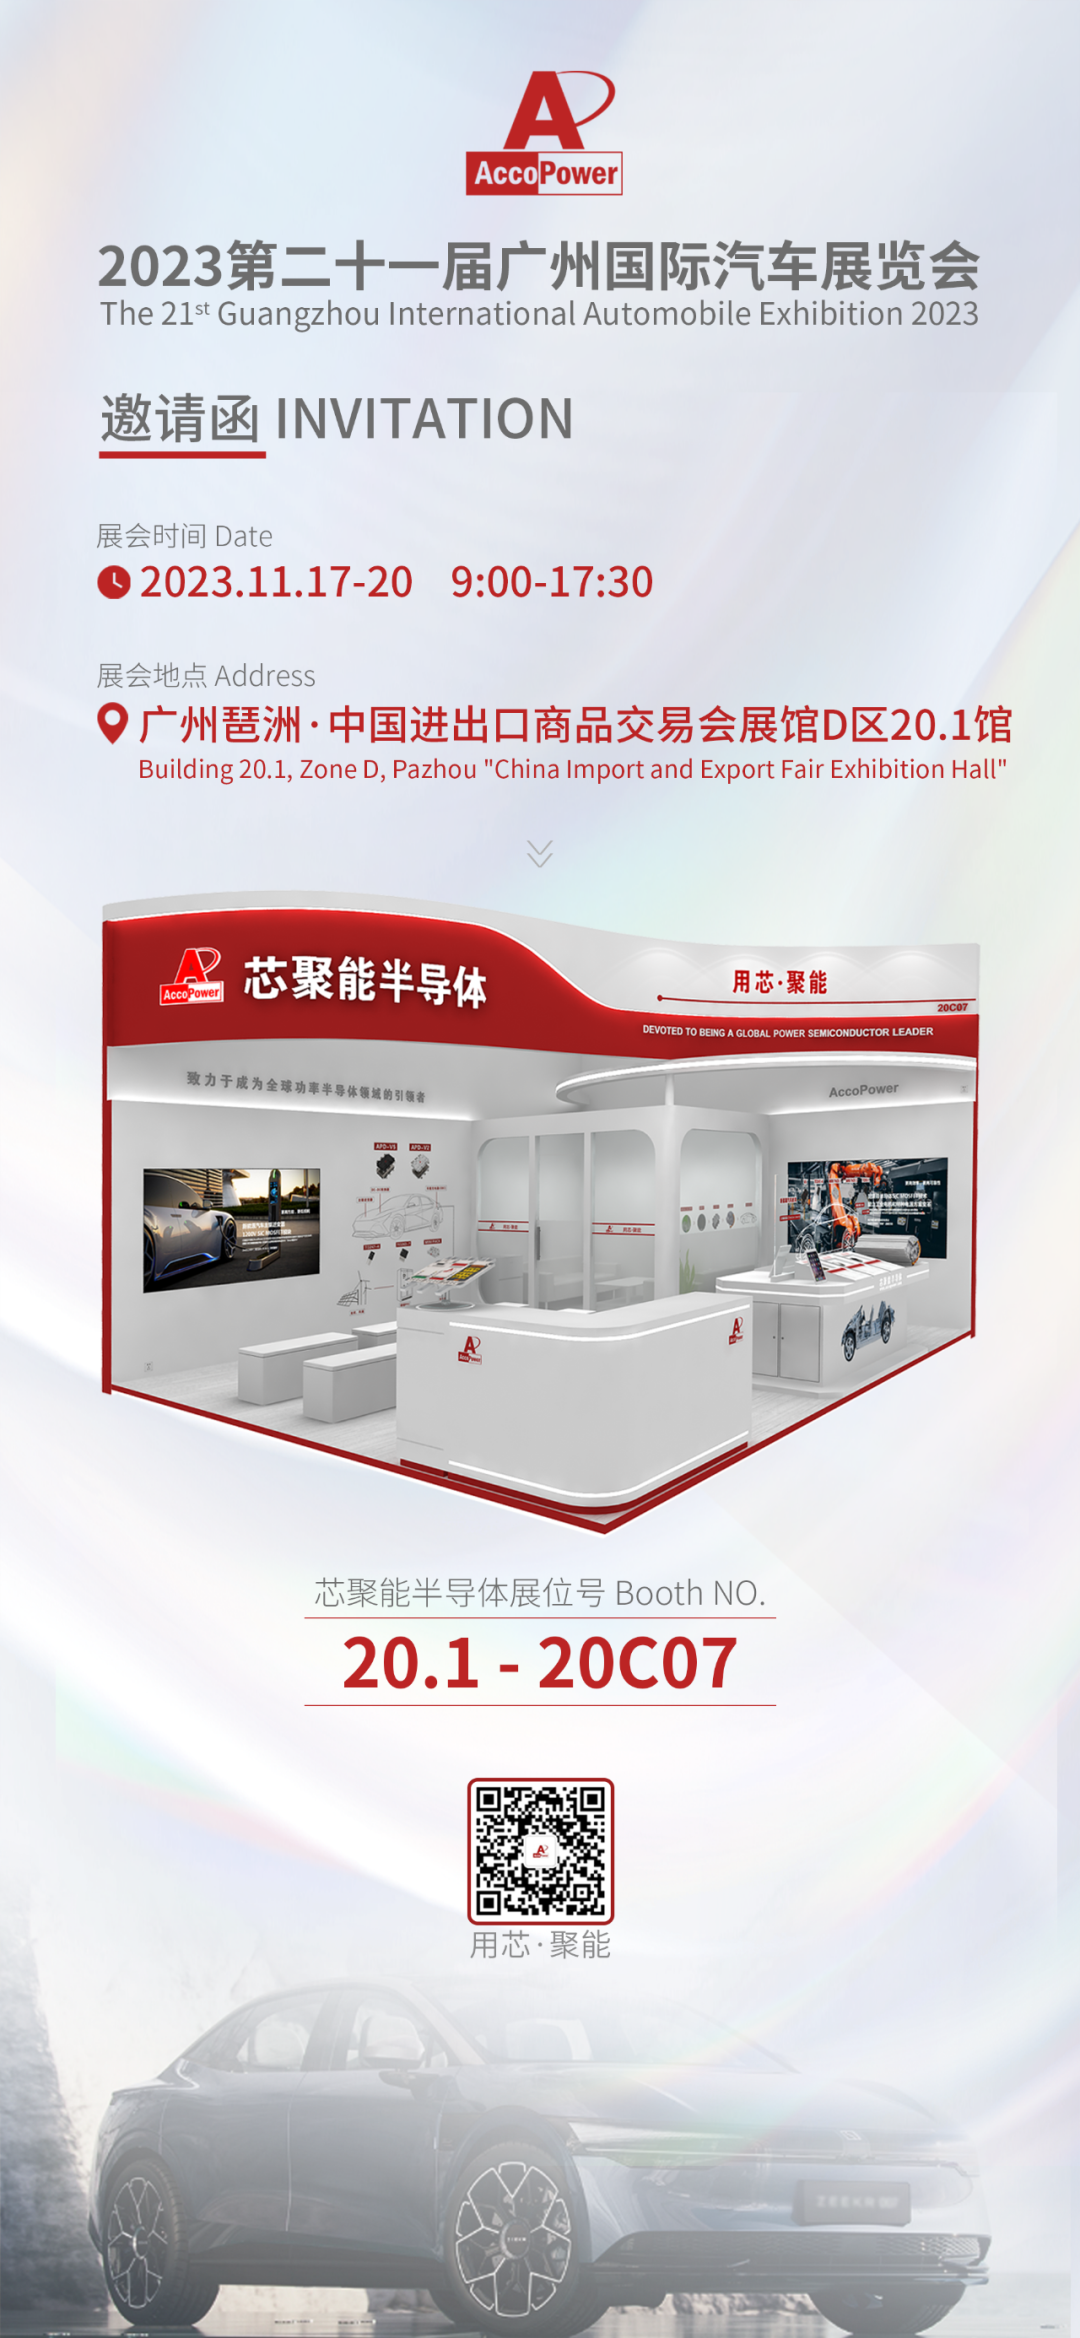 新科技·新未来 | 芯聚能半导体邀您相约2023第二十一届广州国际汽车展览会